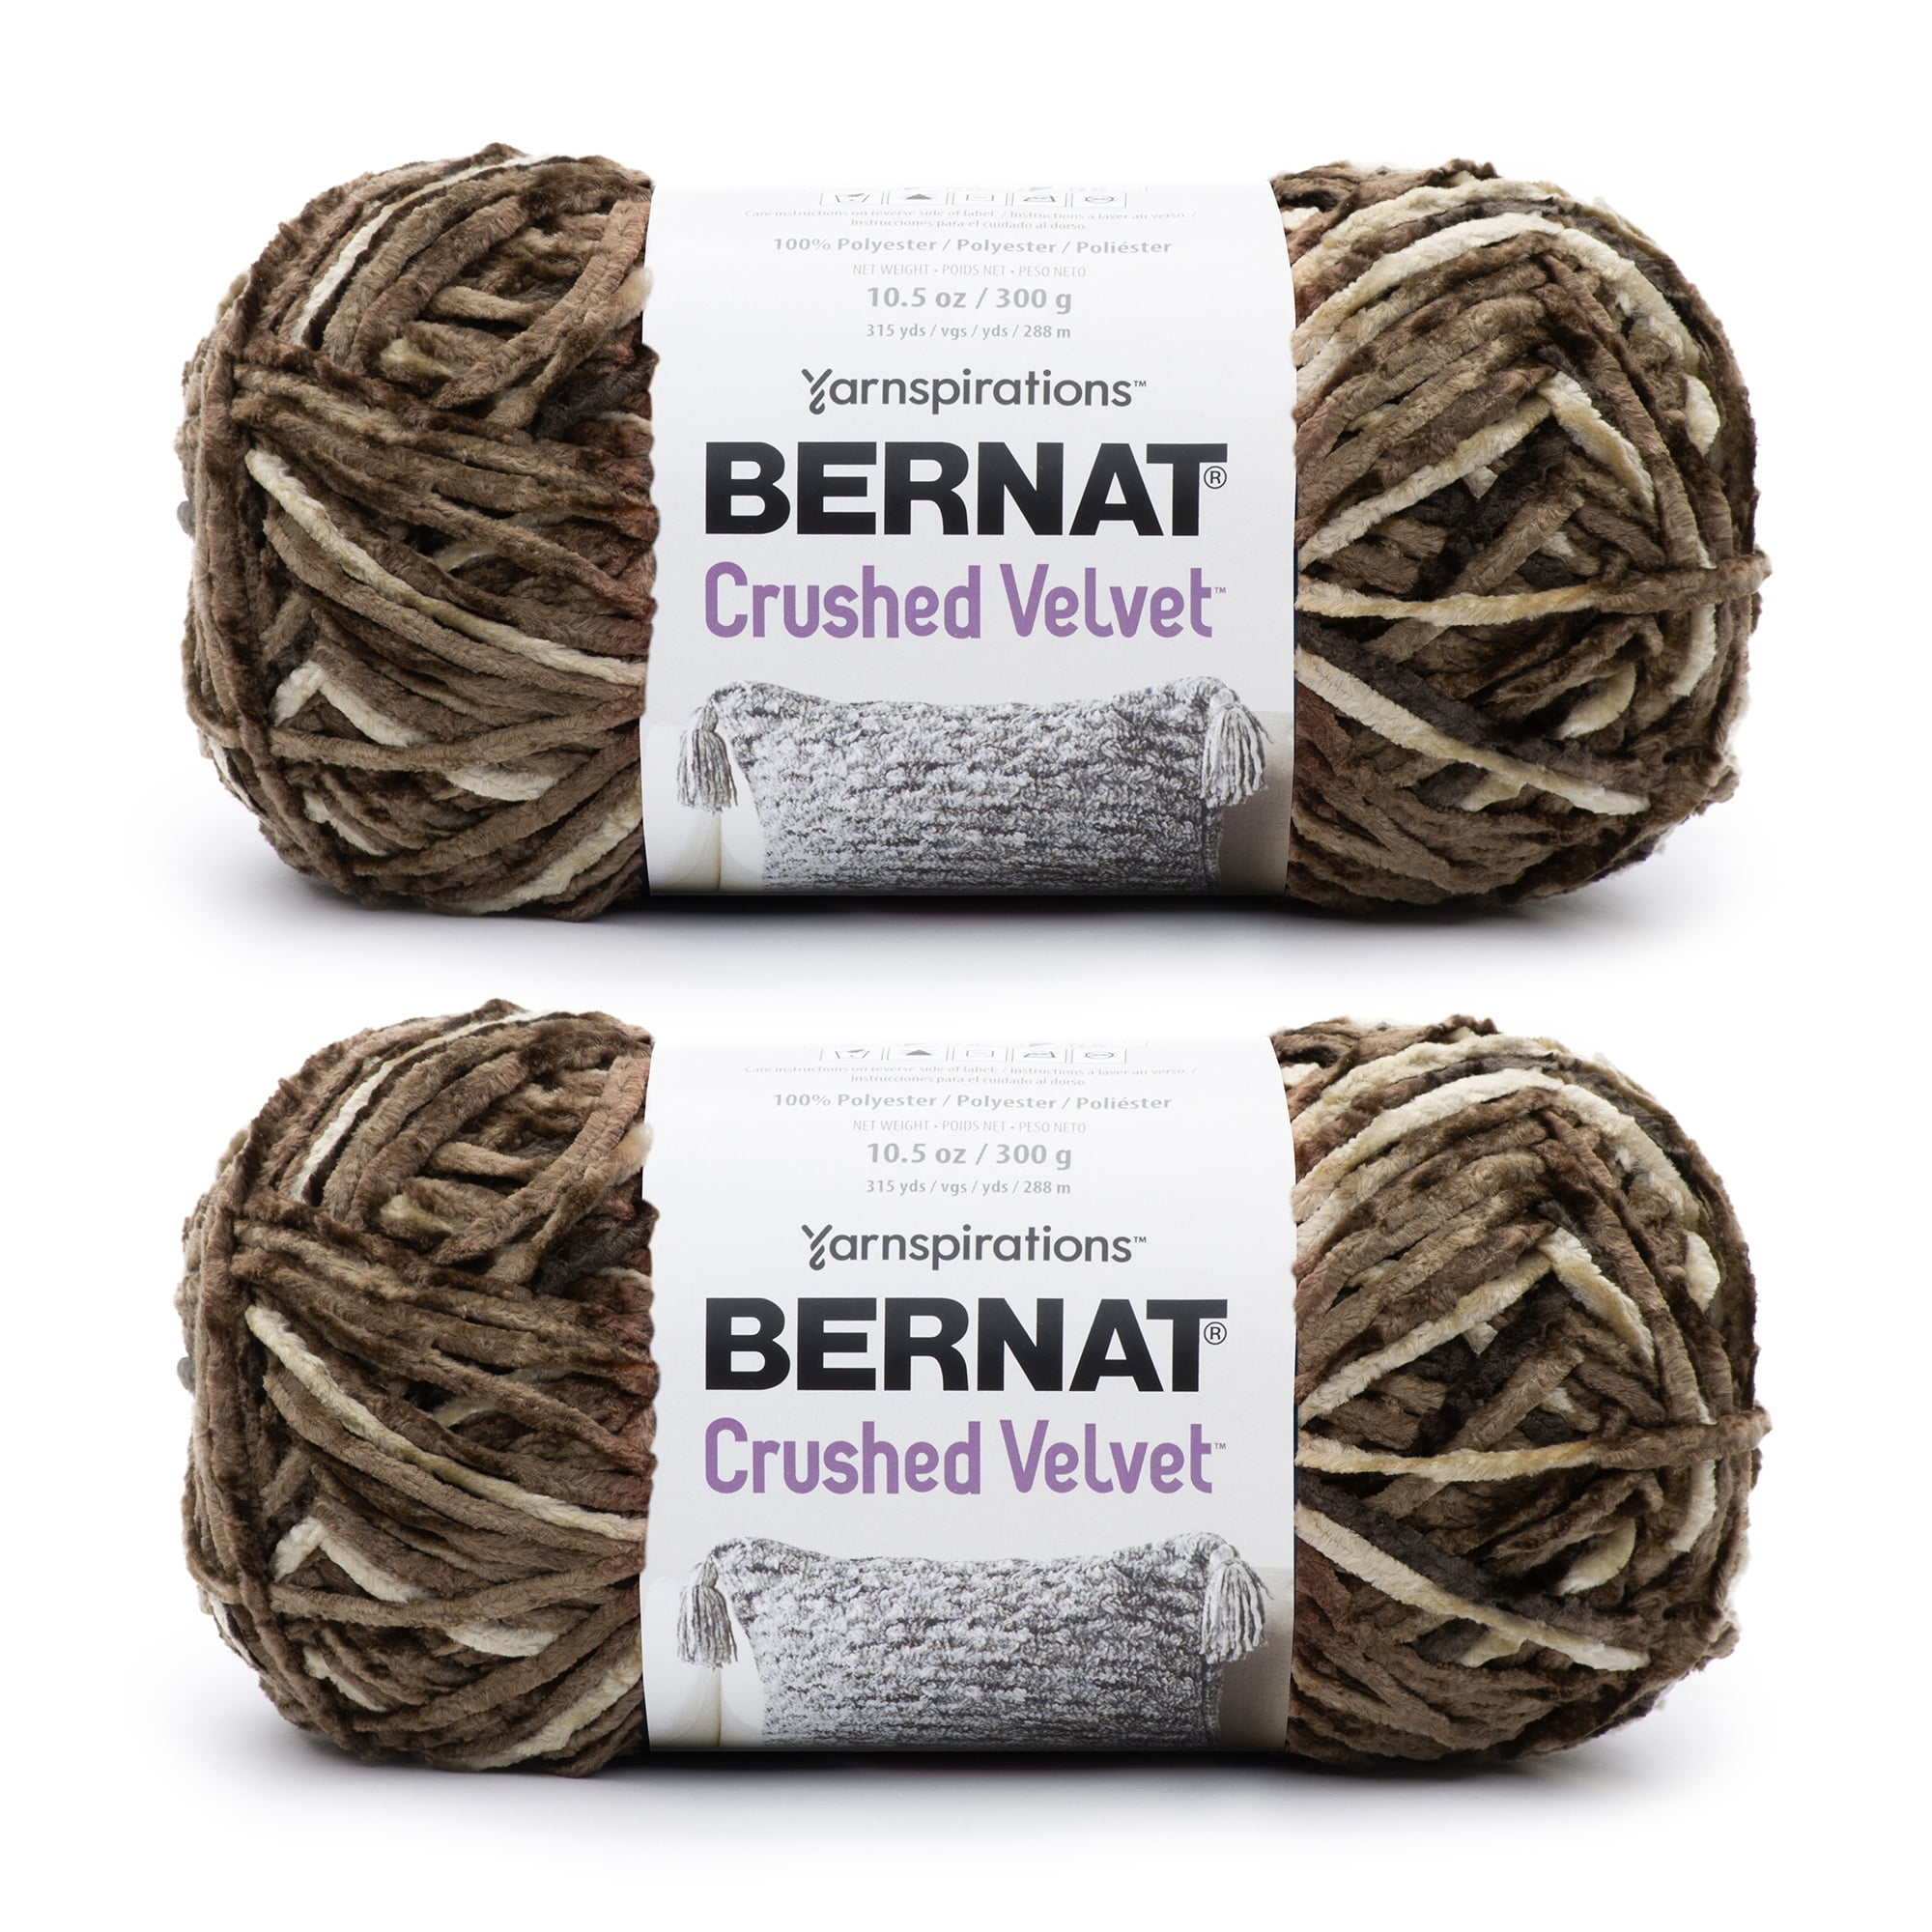 Bernat Crushed Velvet Deep Gray Yarn - 2 Pack of 300g/10.5oz - Polyester - 5 Bulky - 315 Yards - Knitting/Crochet